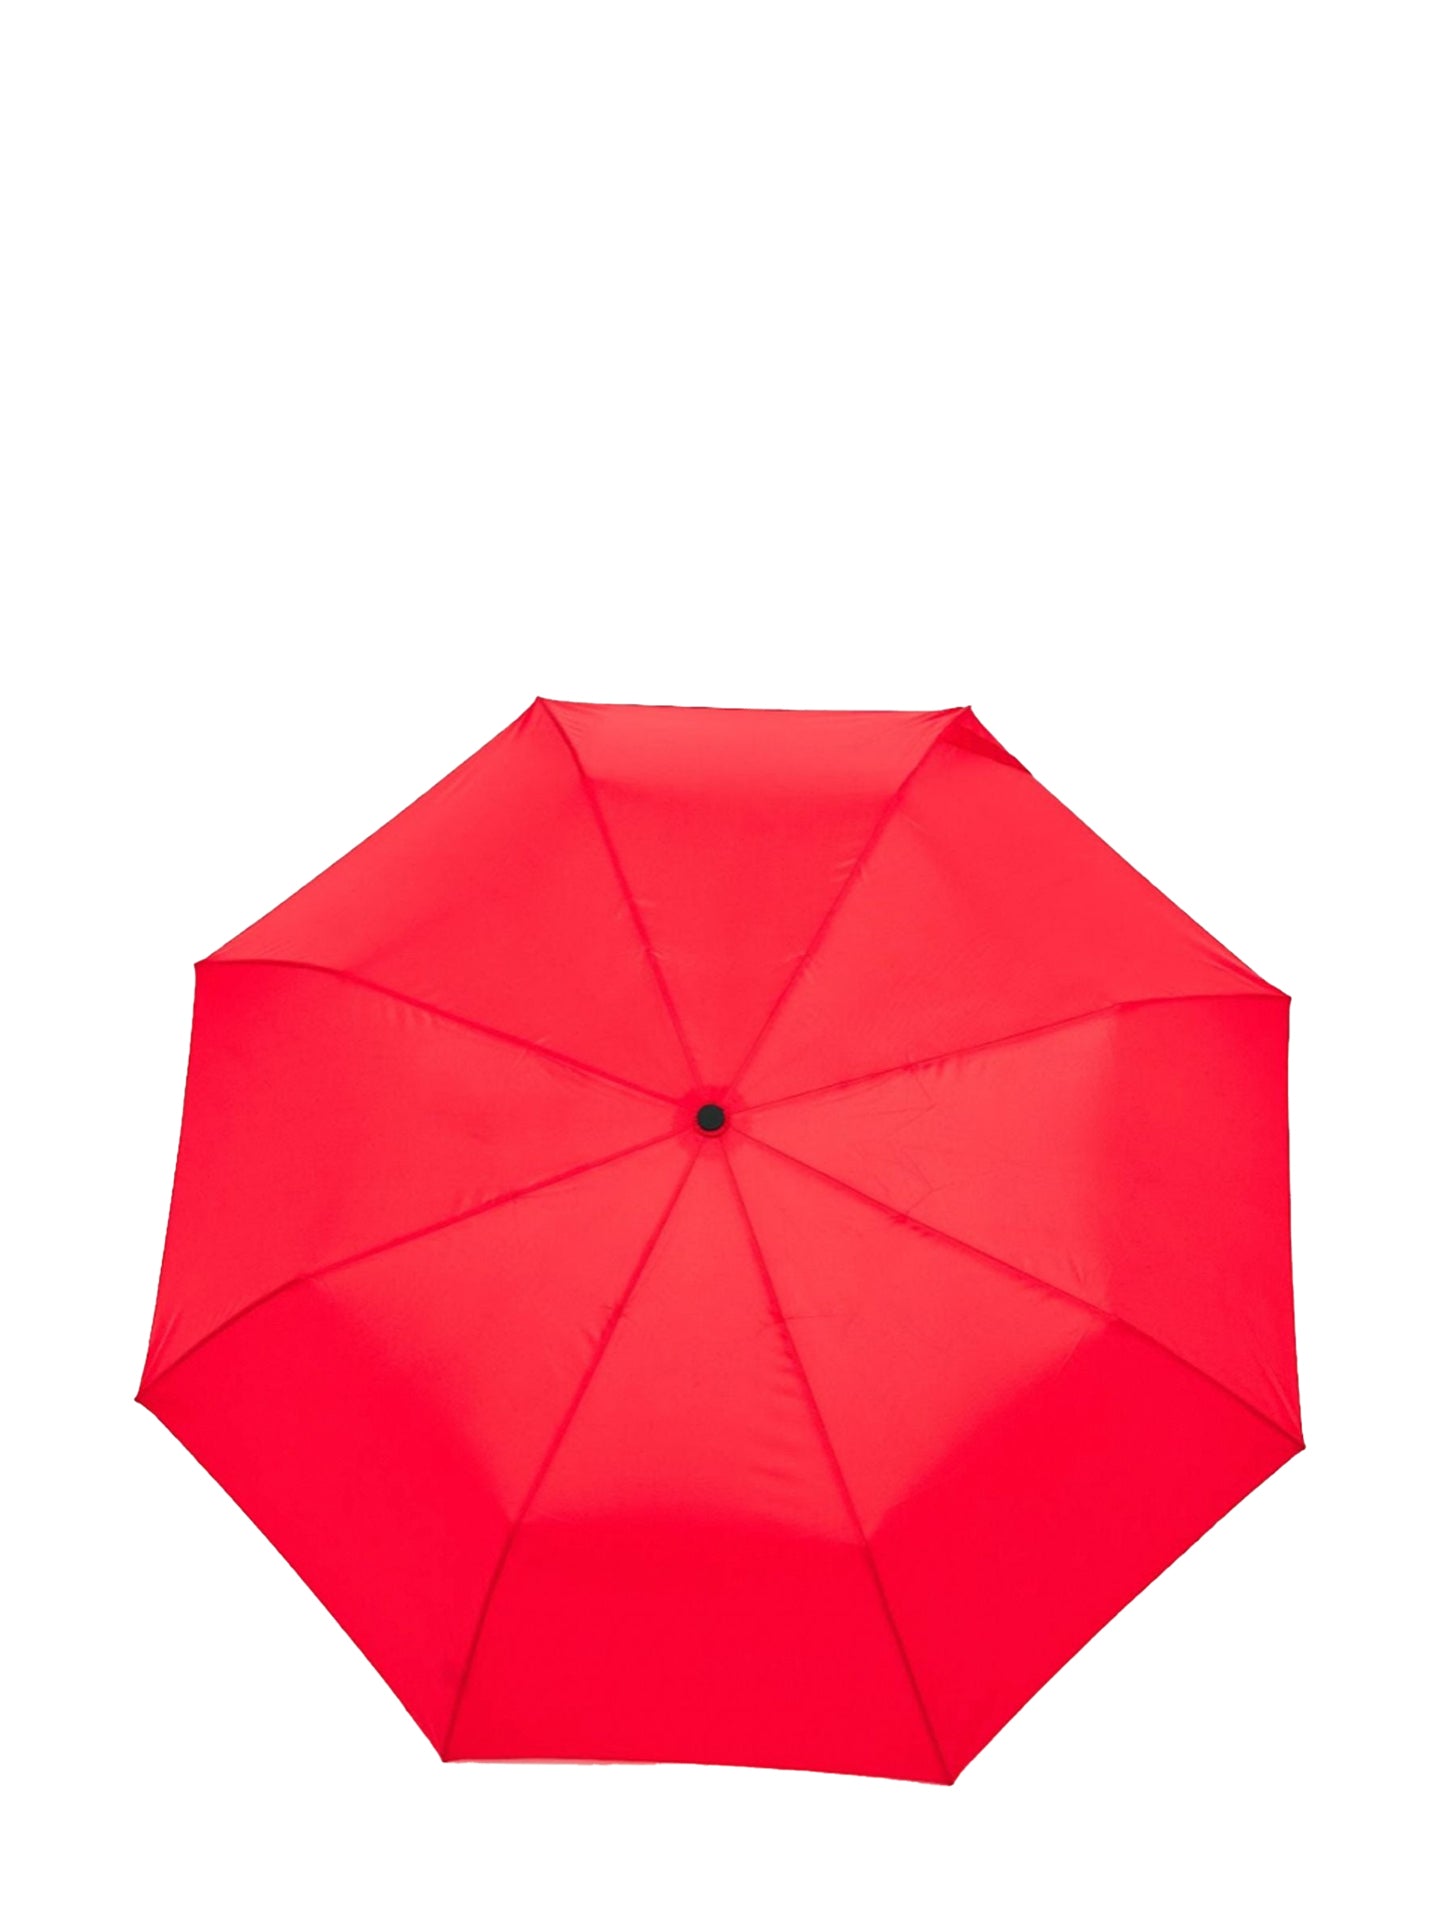 Duck Umbrella, red